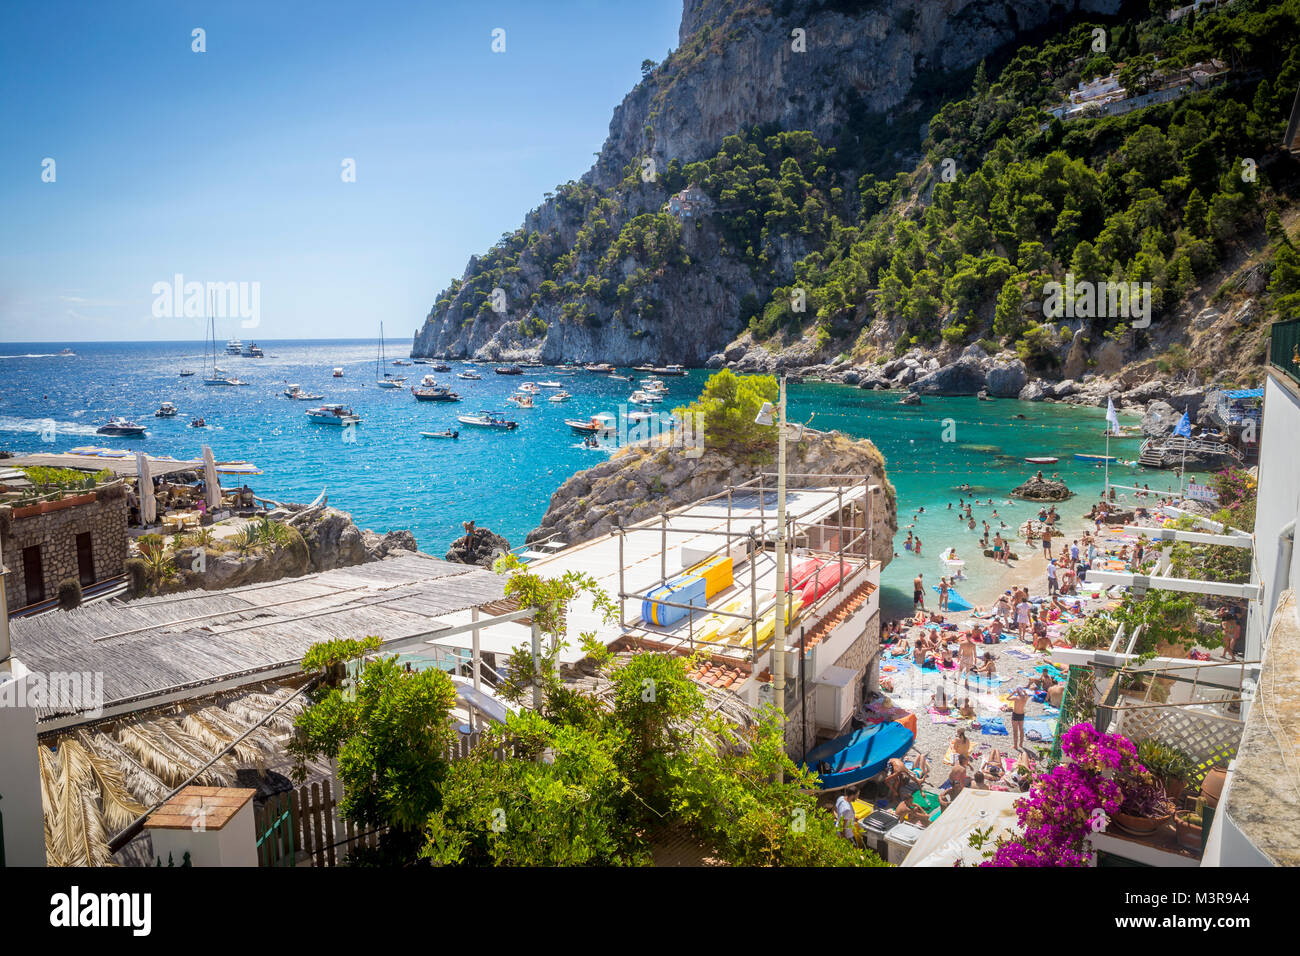 La spiaggia di Marina Piccola a Capri Island in Italia Foto Stock